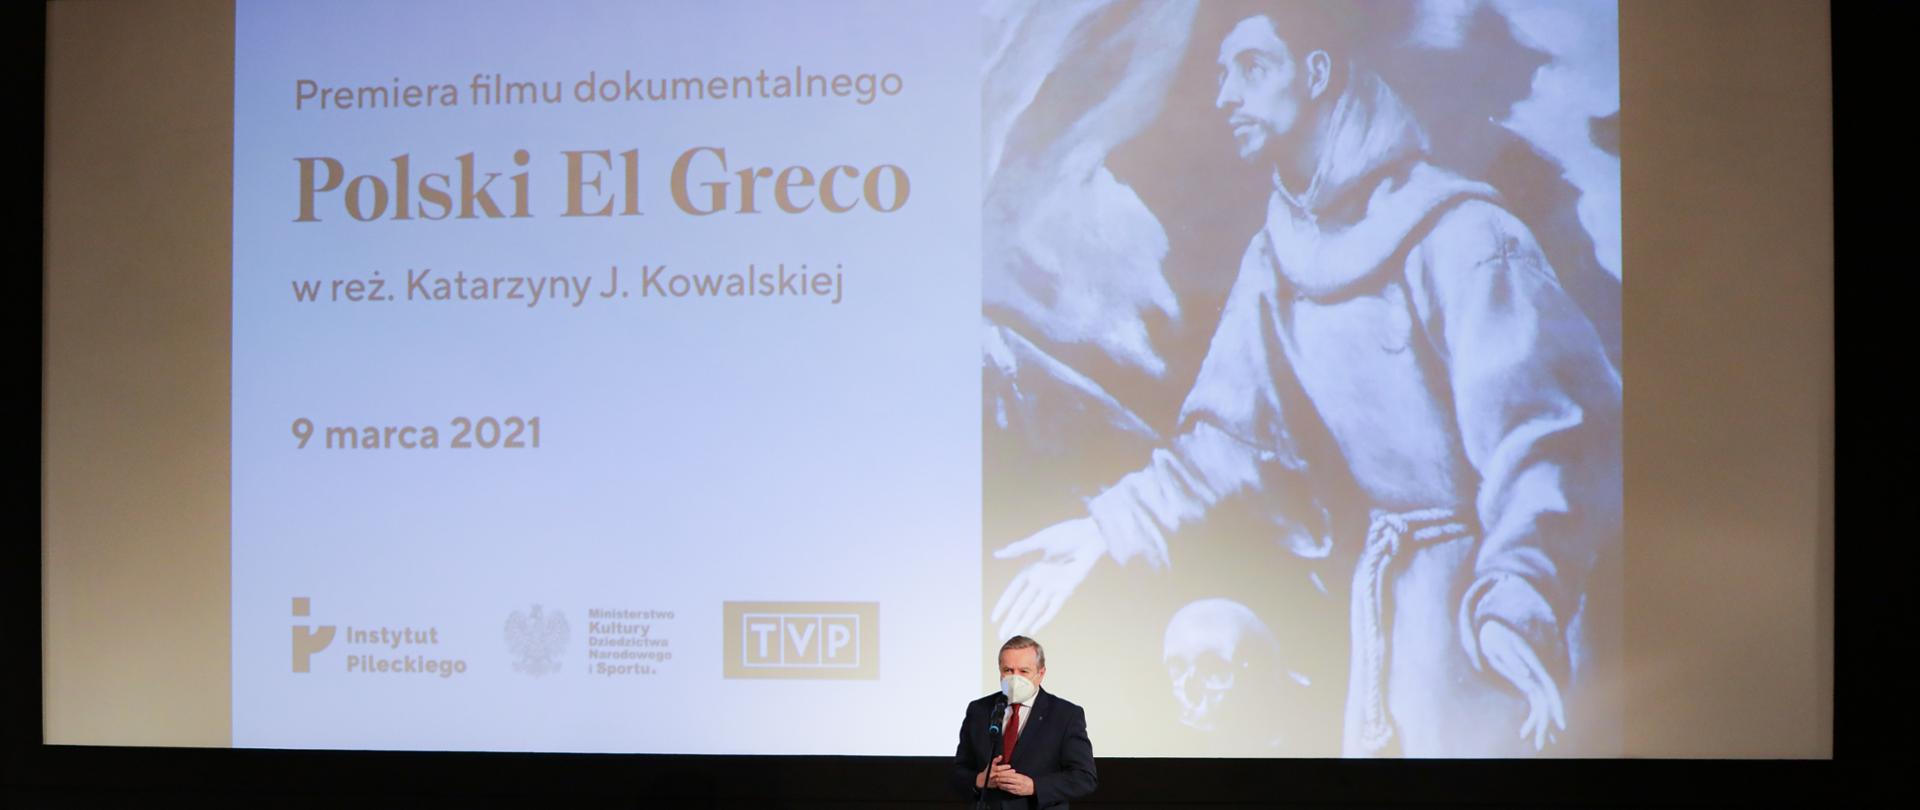 Polski El Greco – premiera niezwykłej filmowej opowieści, fot. Danuta Matloch